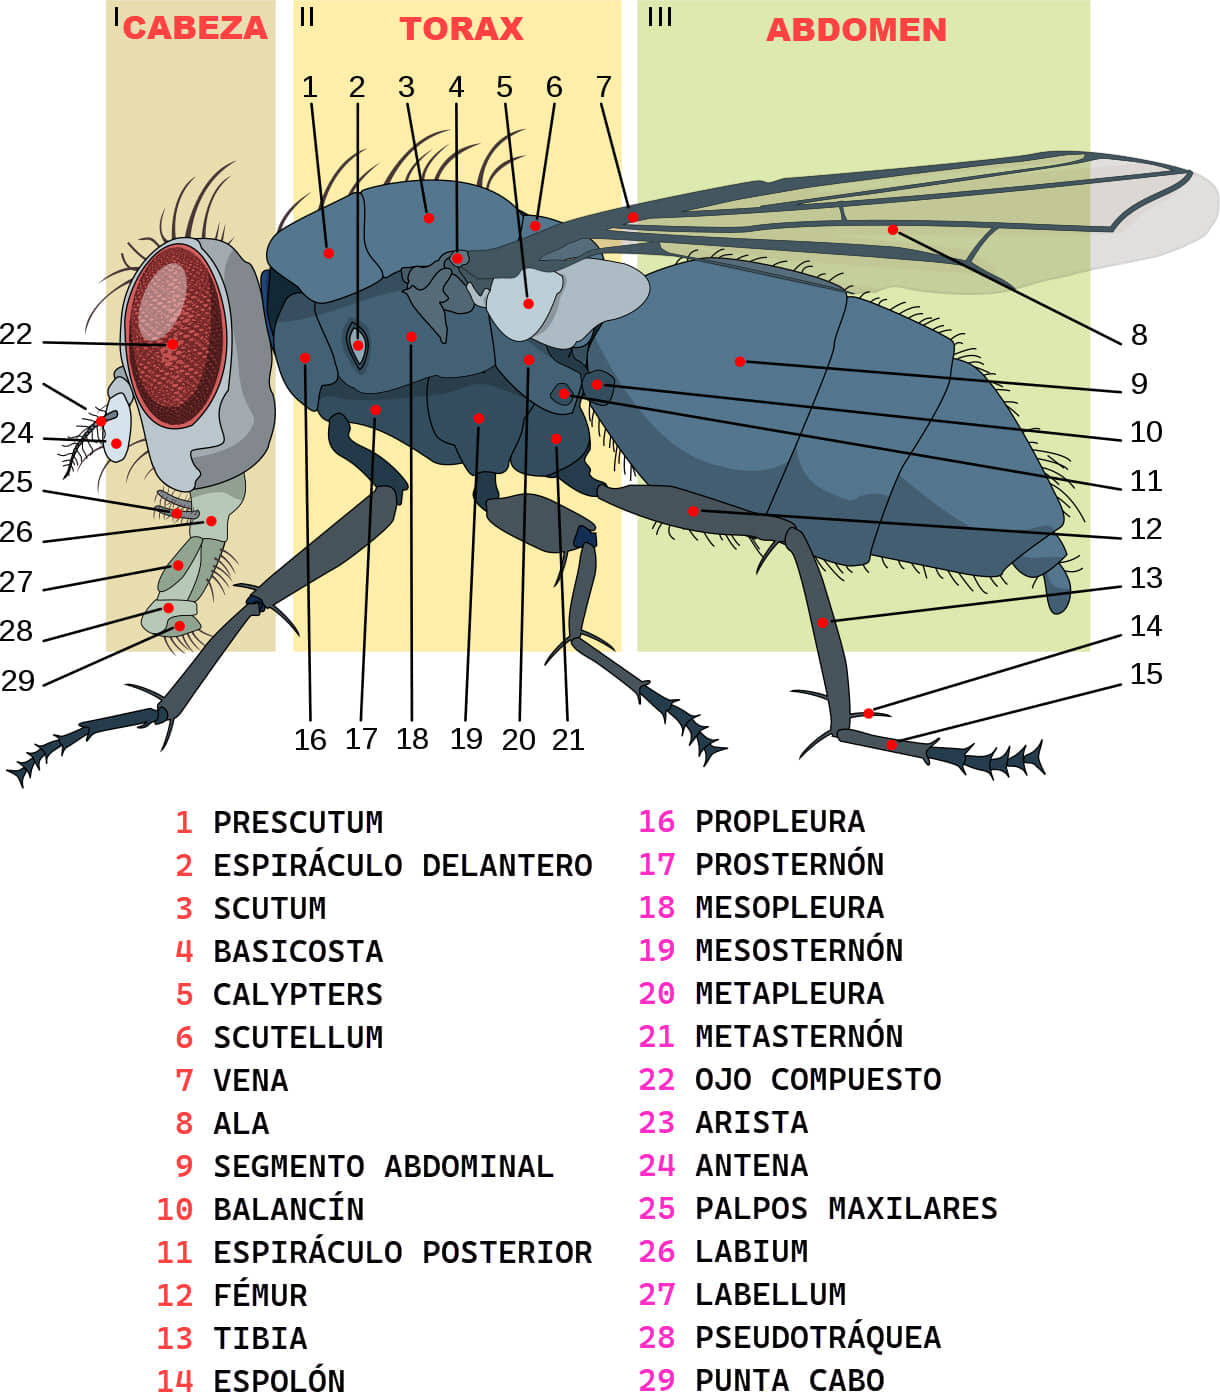 Anatomía de una mosca casera 